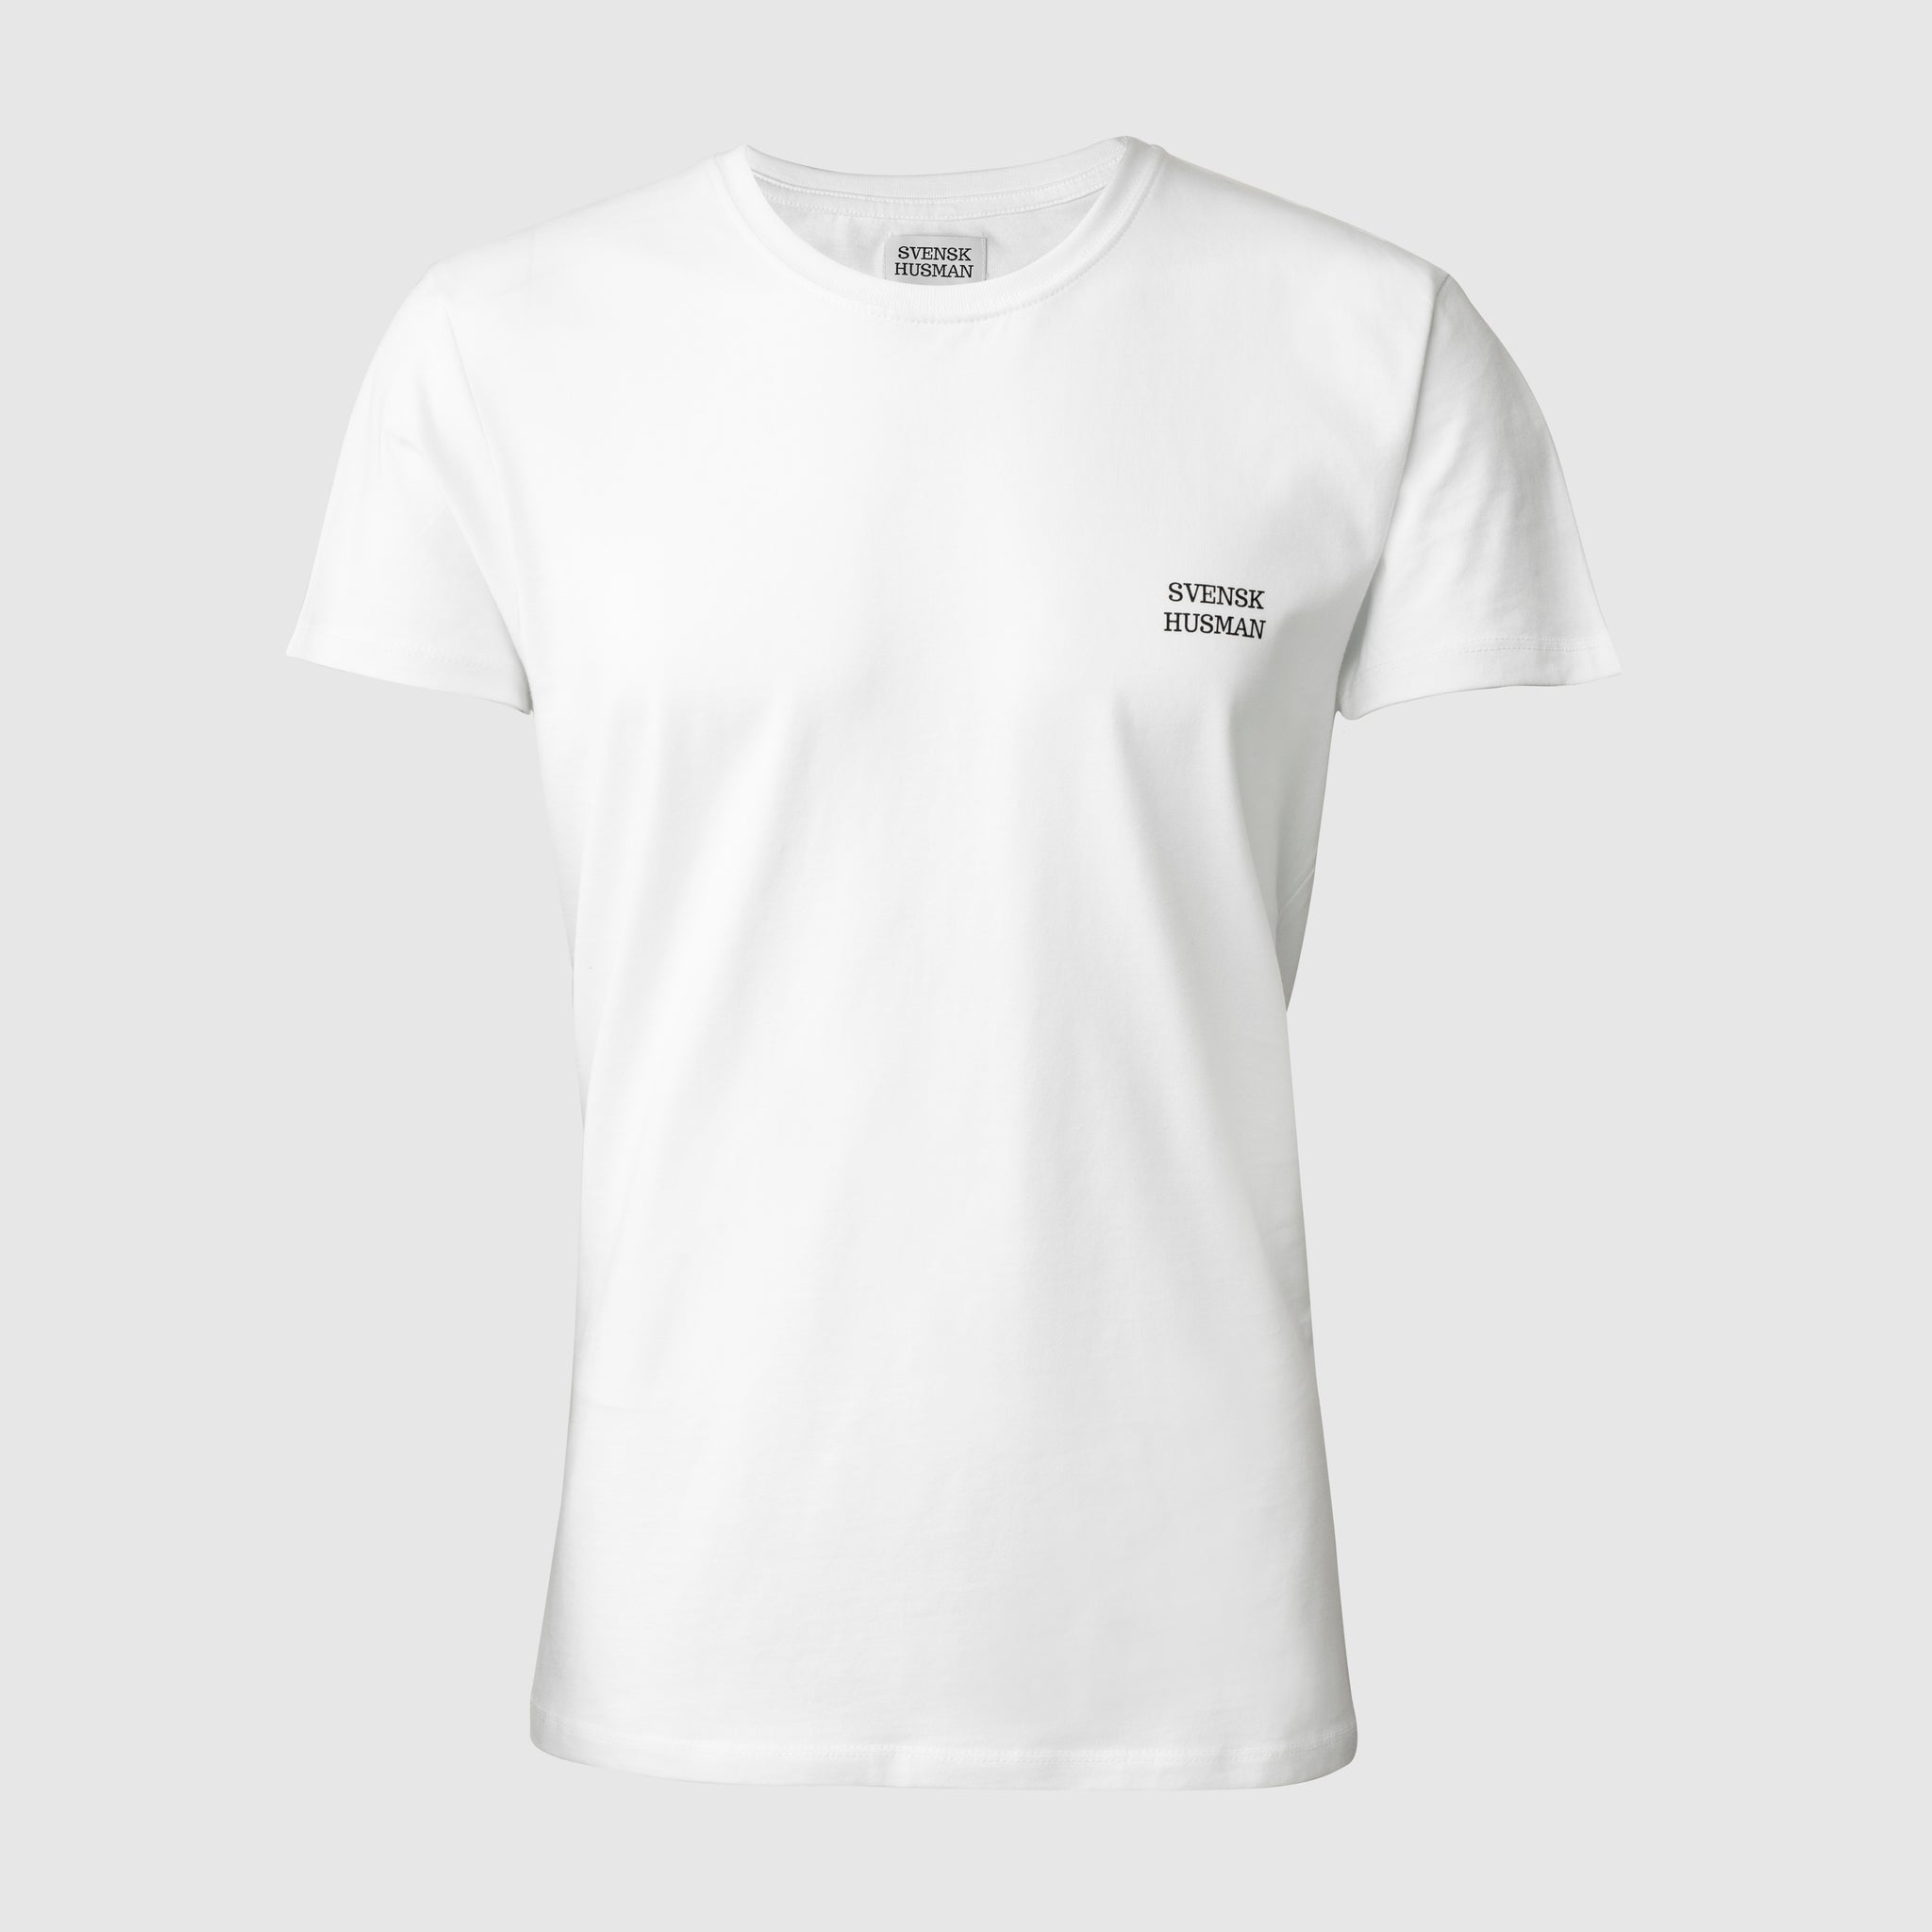 Svensk Husman - t-shirt